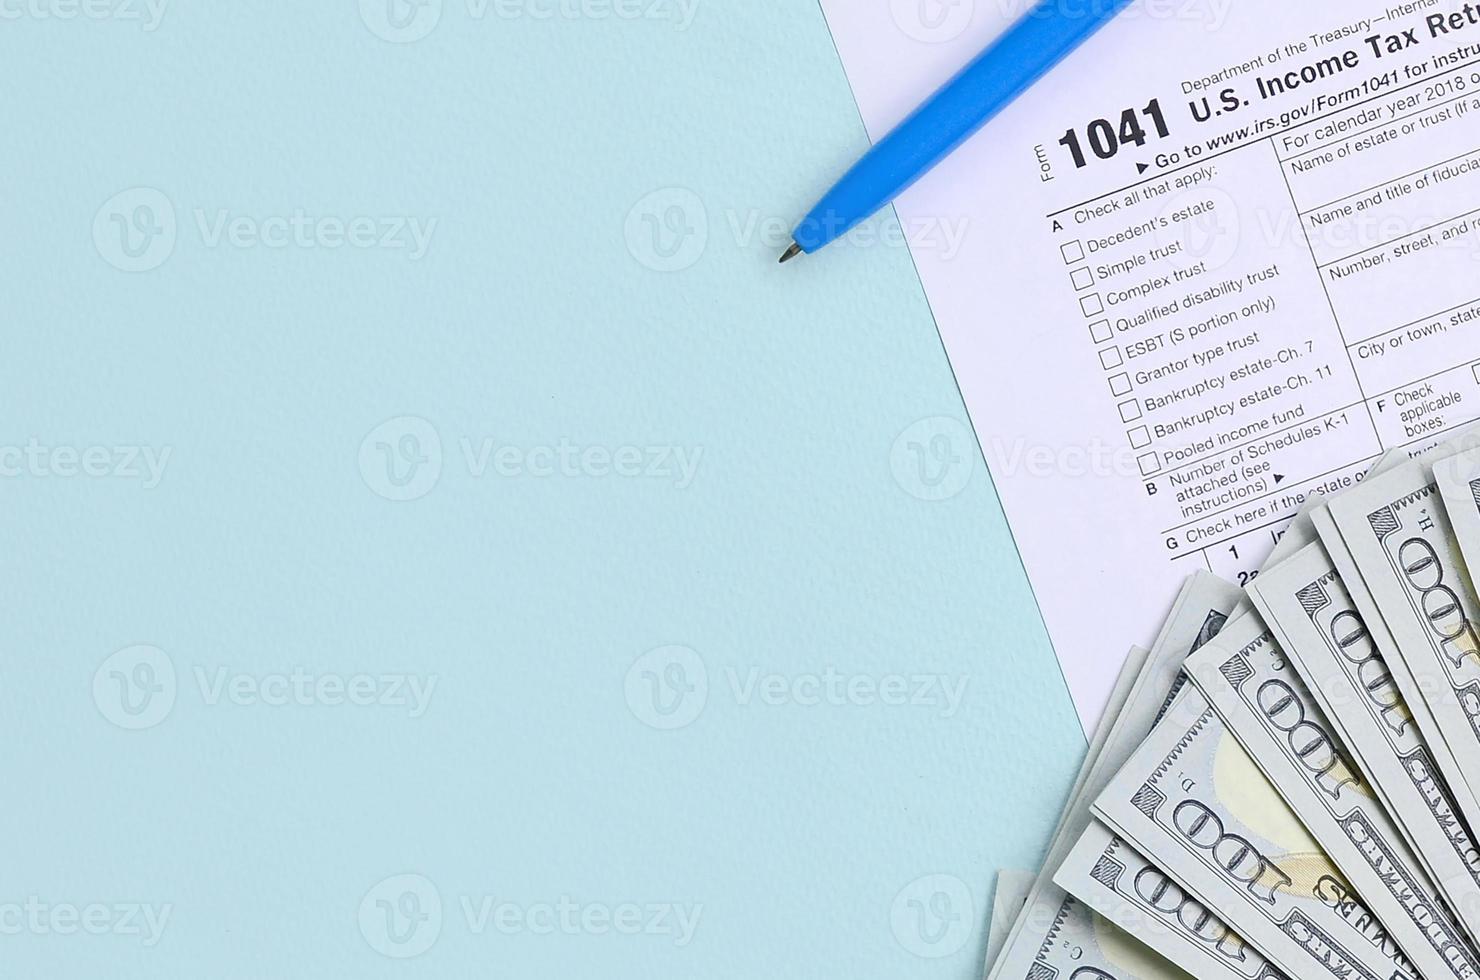 El formulario de impuestos 1041 se encuentra cerca de los billetes de cien dólares y el bolígrafo azul sobre un fondo azul claro. declaración de impuestos sobre la renta de estados unidos para sucesiones y fideicomisos foto